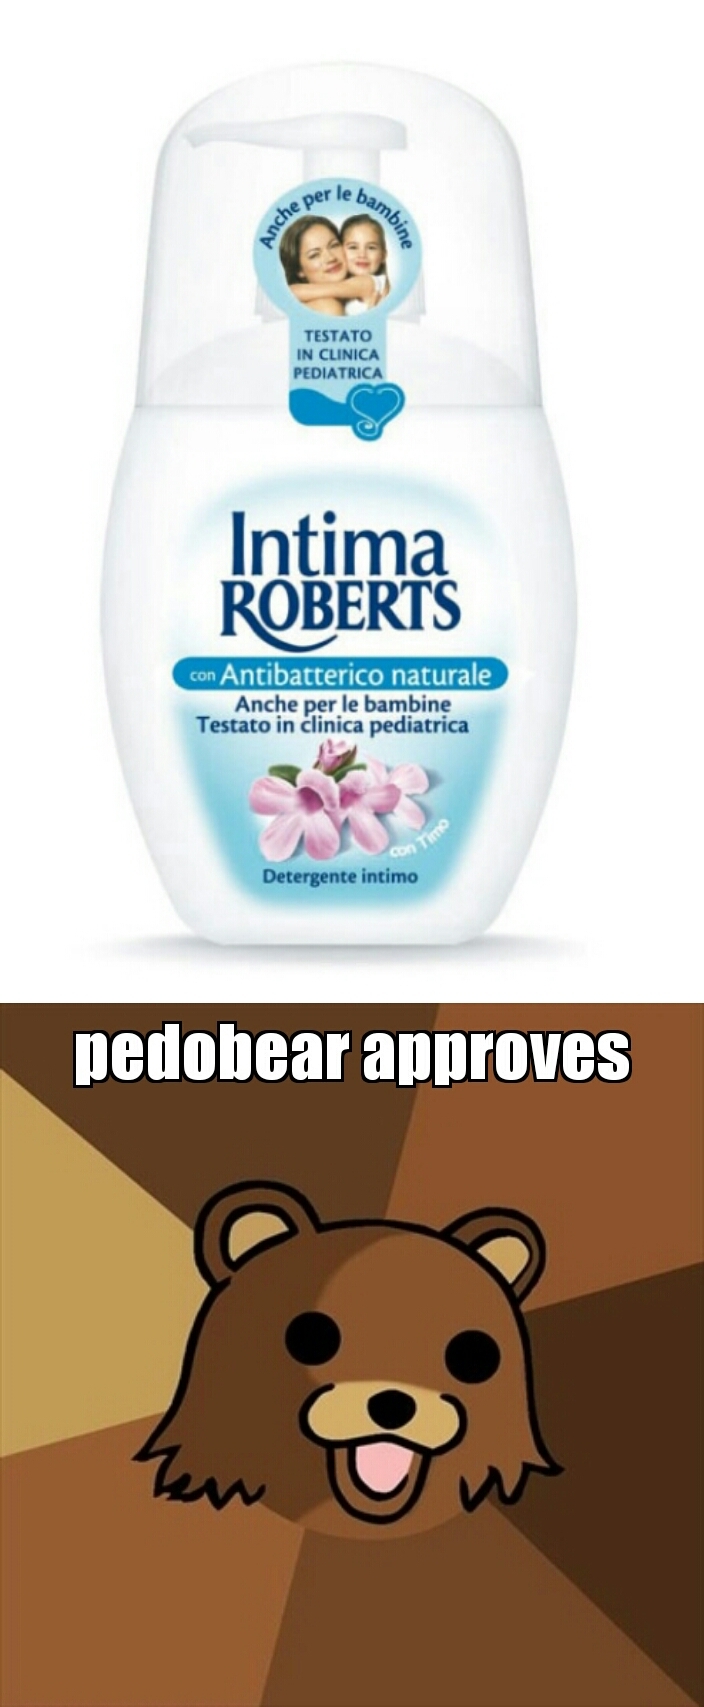 Pedobear's shampoo - meme